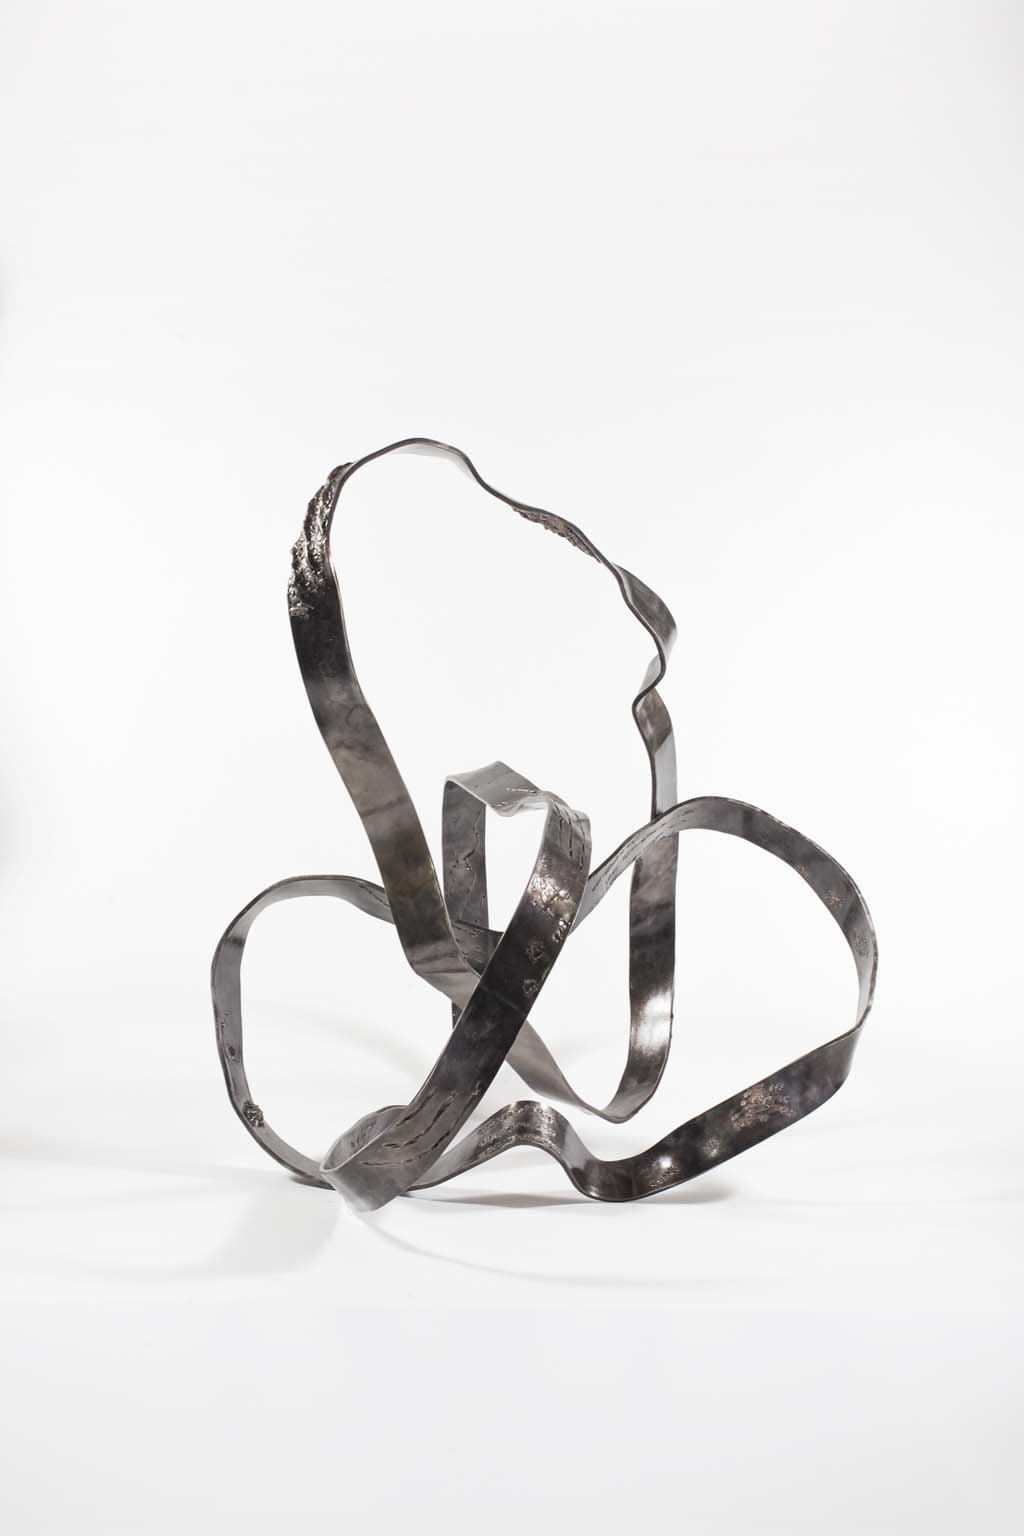 'Oblivion III ' | Iron and brass sculpture | Artist: Rami Ater